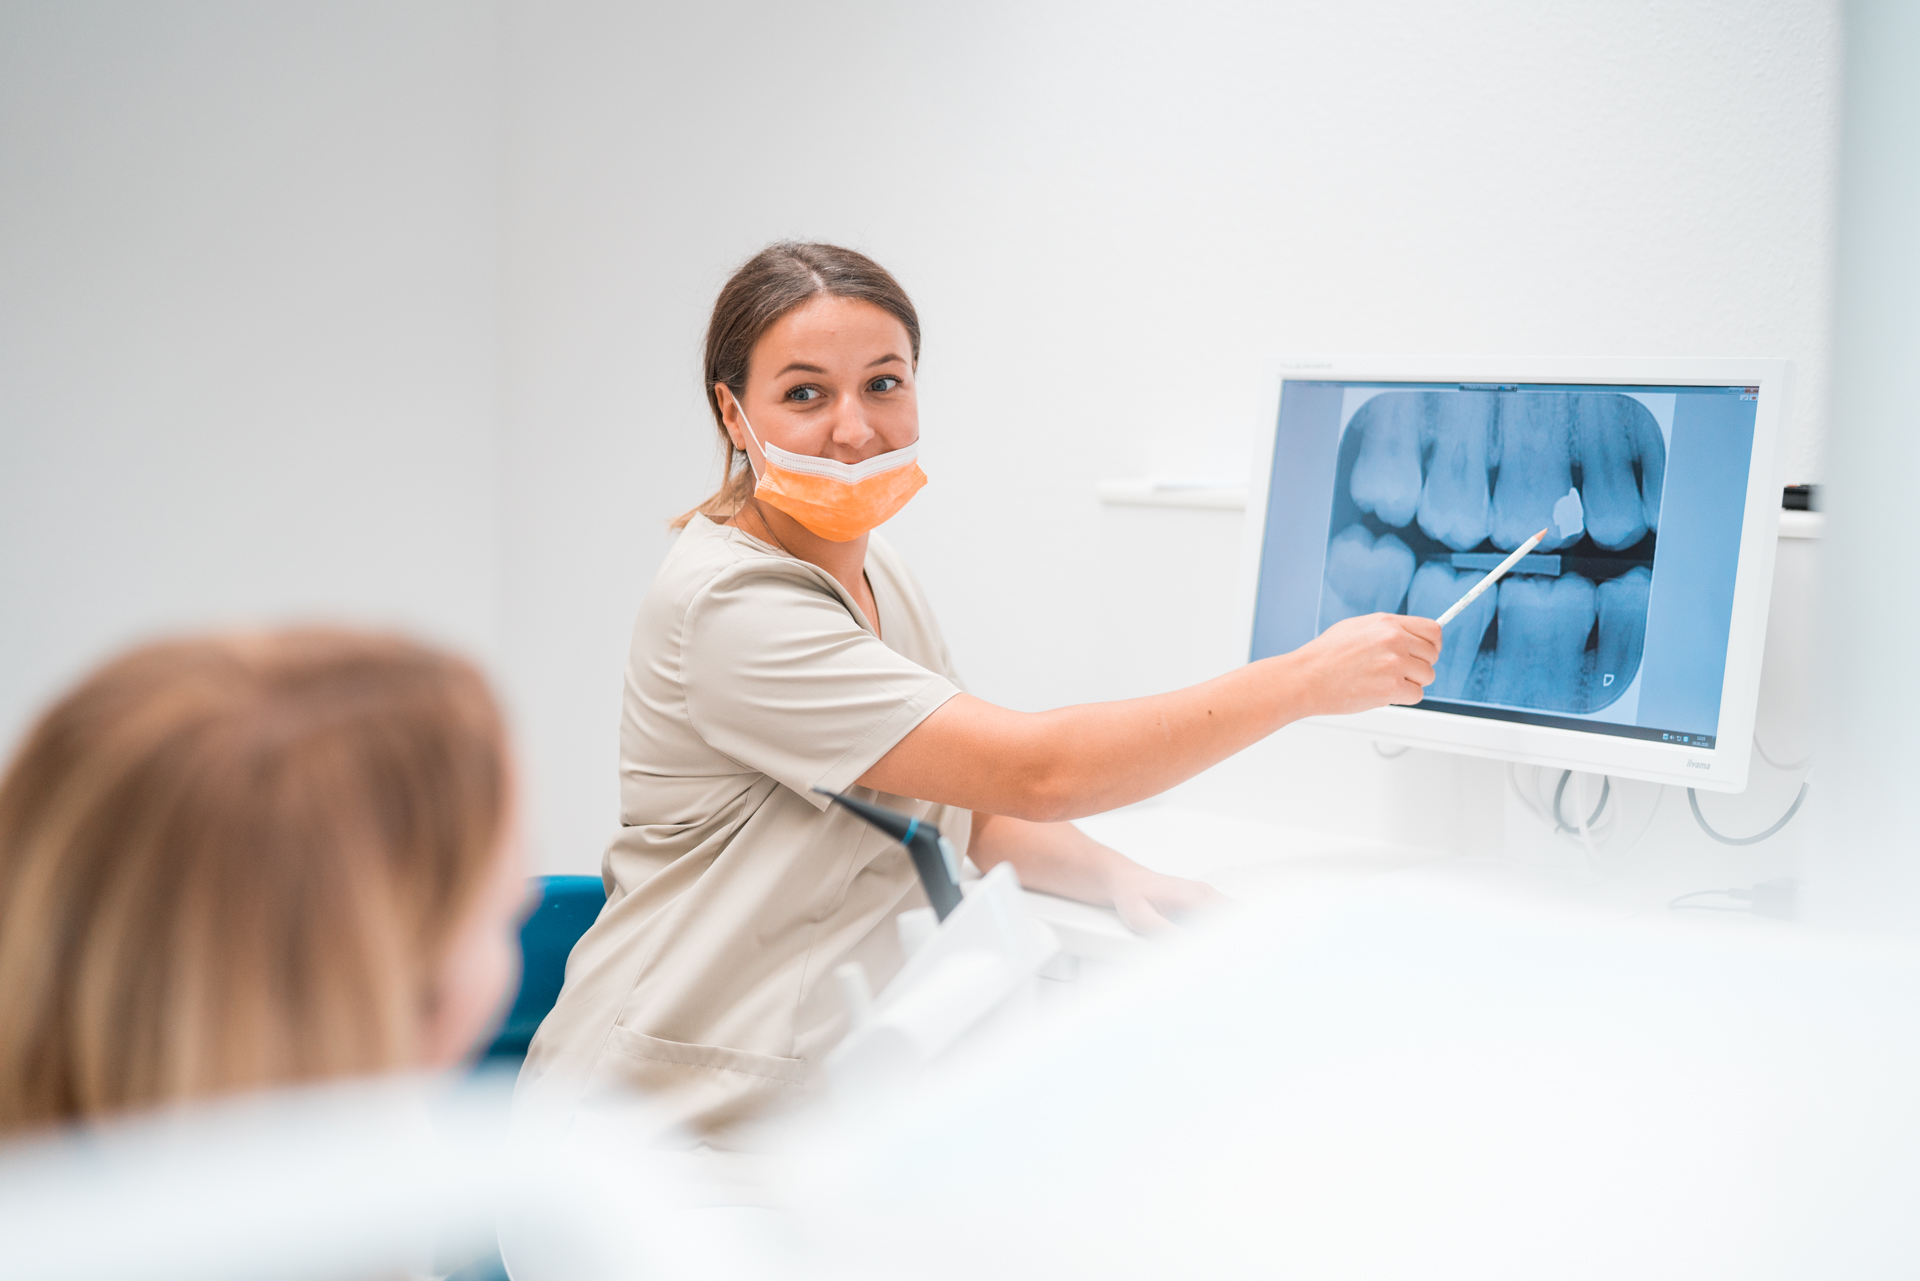 Mitarbeiterin der Zahnärzte Pakravan klärt eine Patientin über das Thema Prophylaxe auf